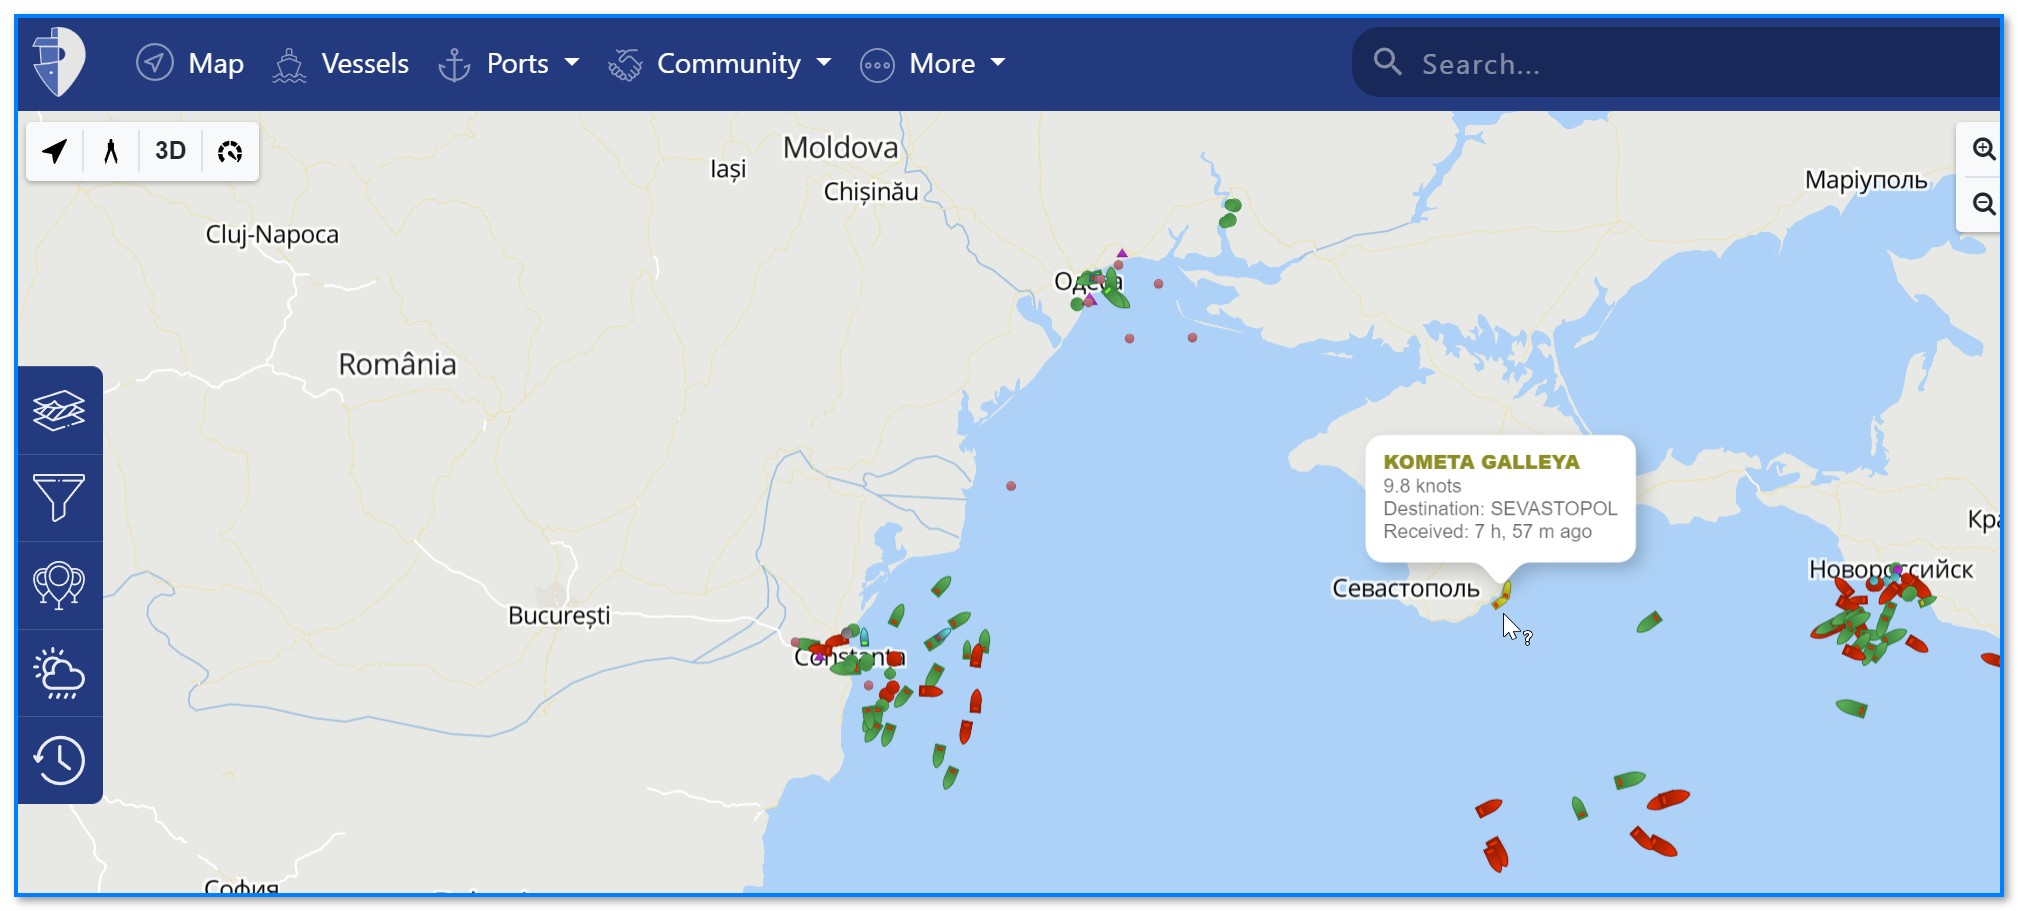 Море трафика. Карта движения морских судов в реальном времени:. Интерактивная карта движения морских судов. Слежение за кораблями. Морской трафик в реальном времени АИС на русском.